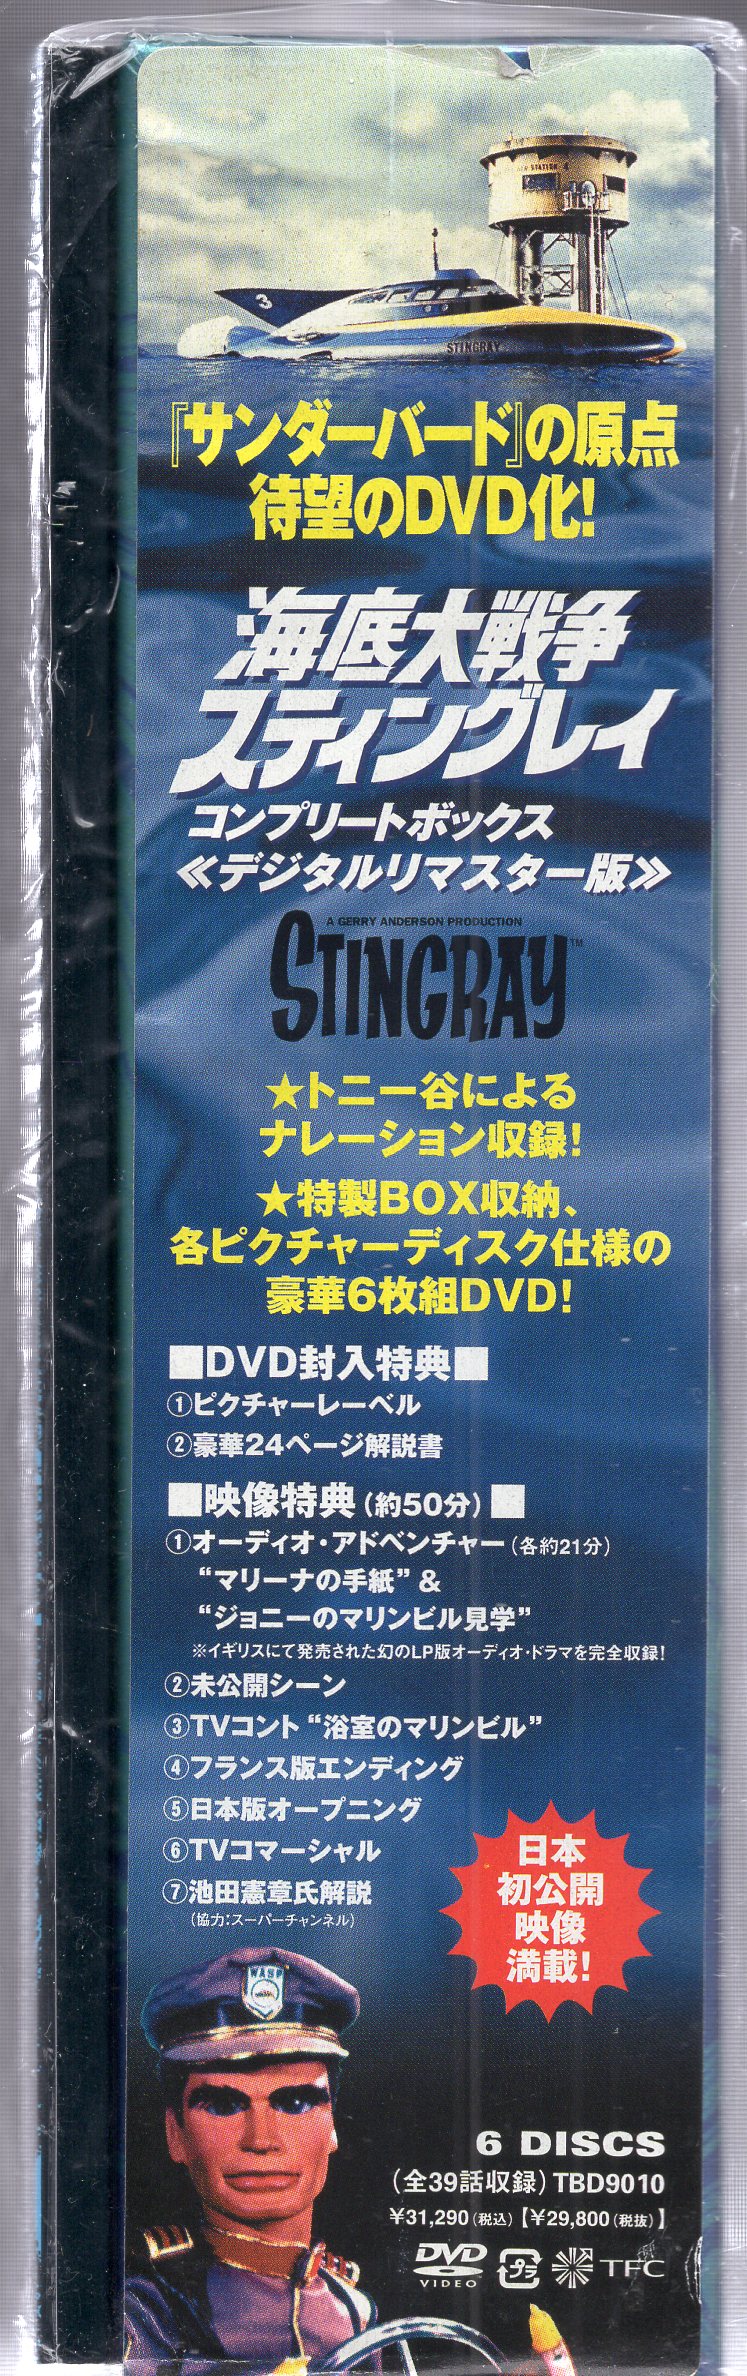 海底大戦争 スティングレイ コンプリートボックス [DVD] - DVD/ブルーレイ